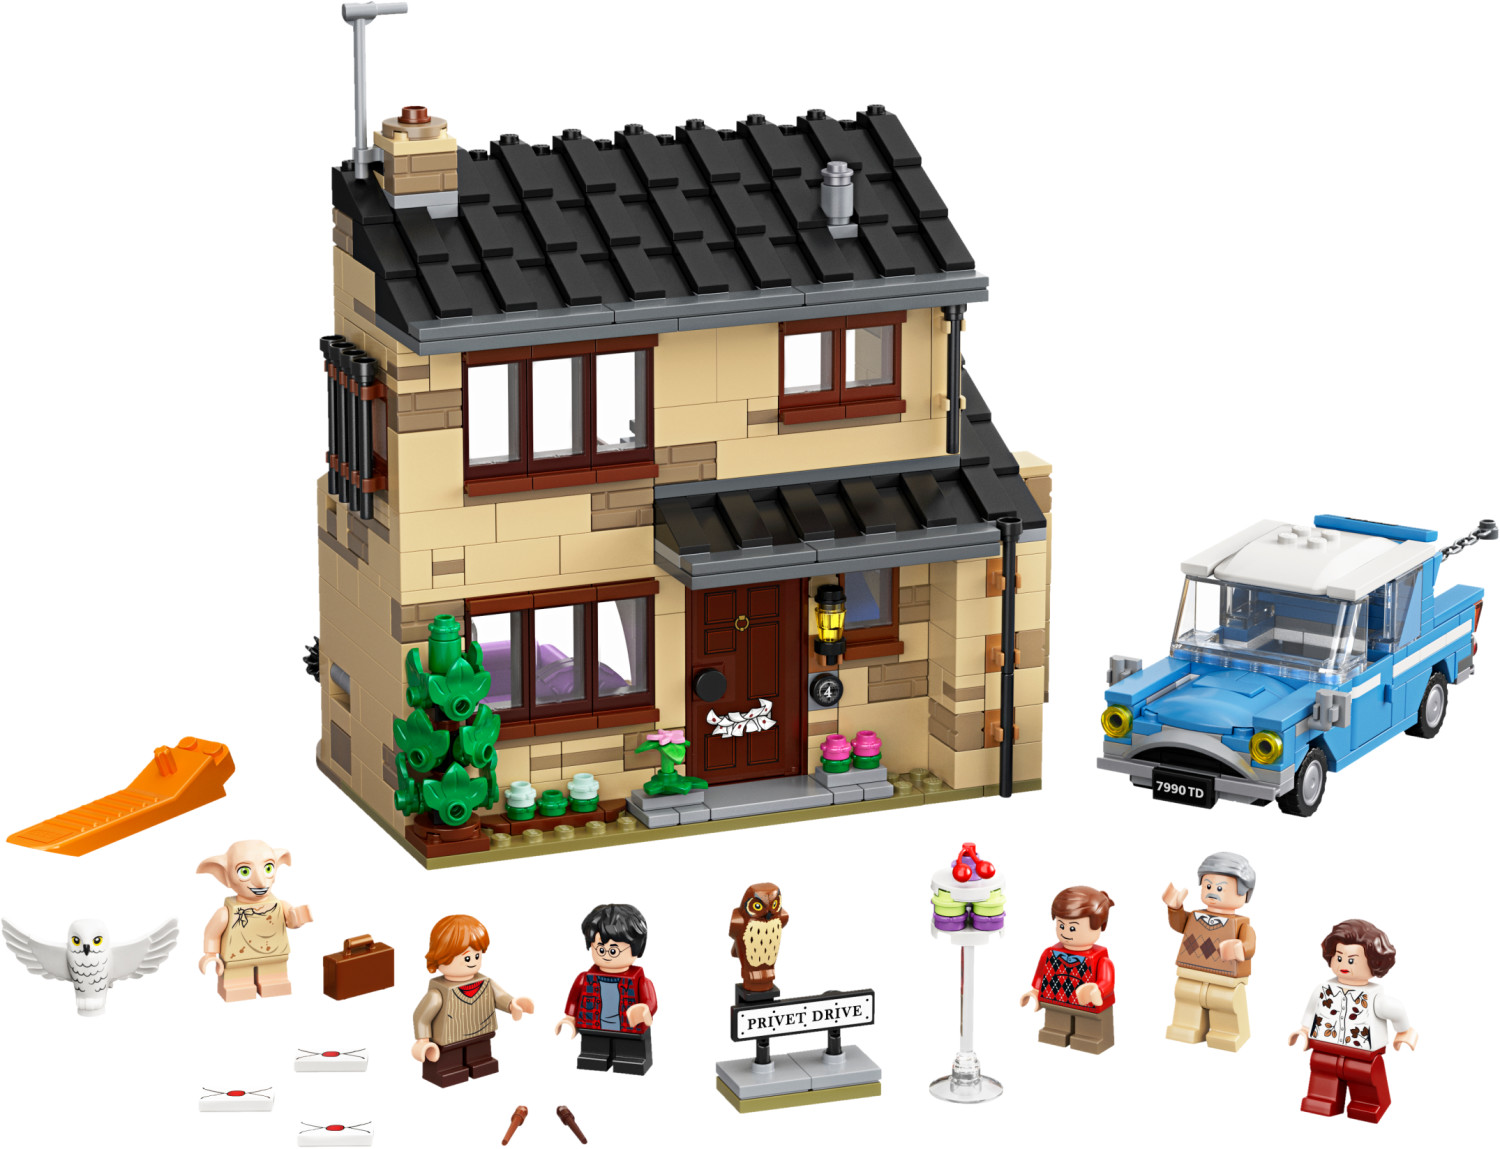 LEGO Harry Potter - Le carrosse de Beauxbâtons : l'arrivée à